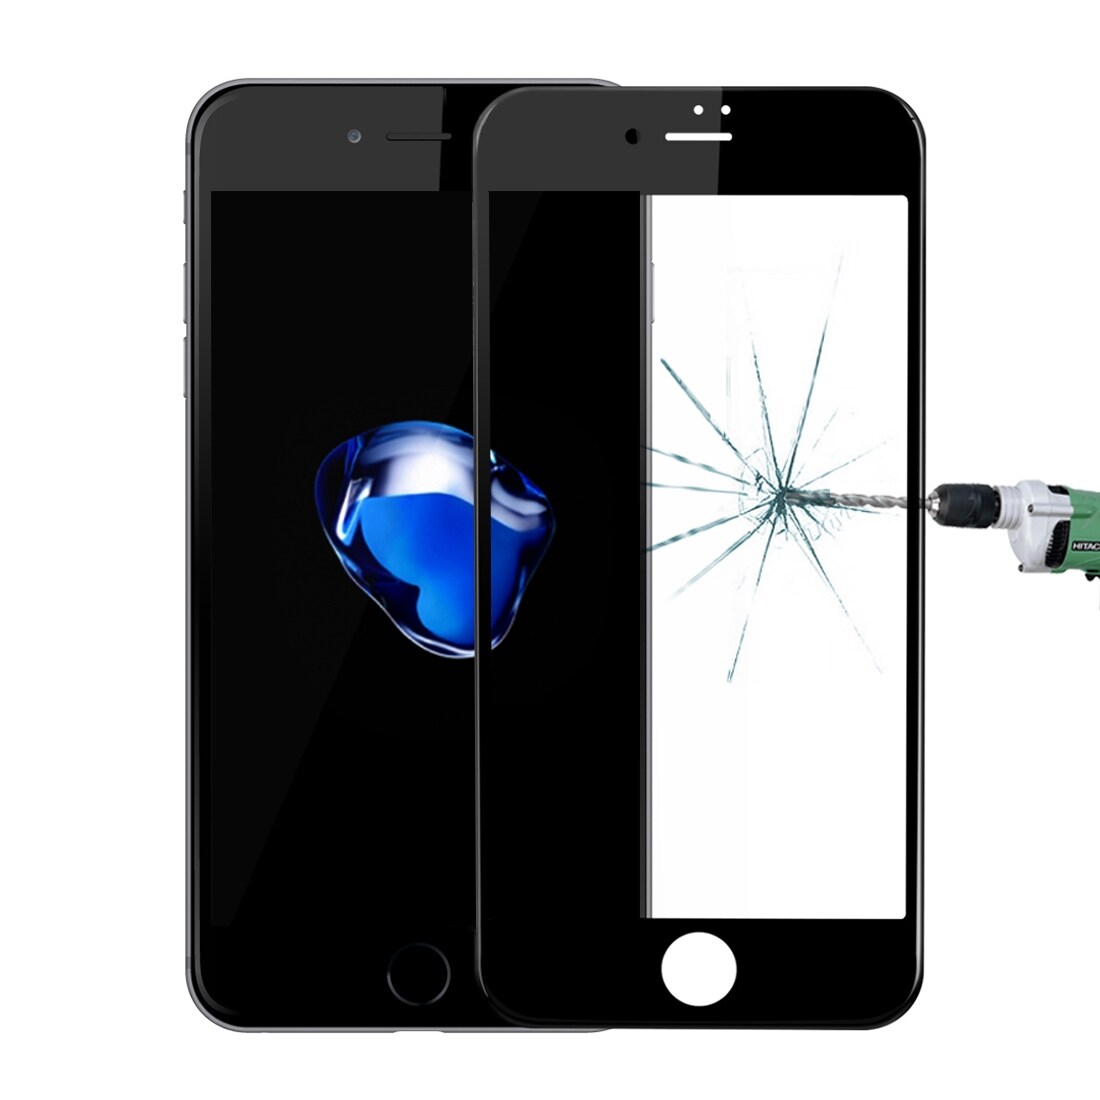 iPhone 8 / 7 Ultratunt skärmskydd i glas som täcker hela skärmen